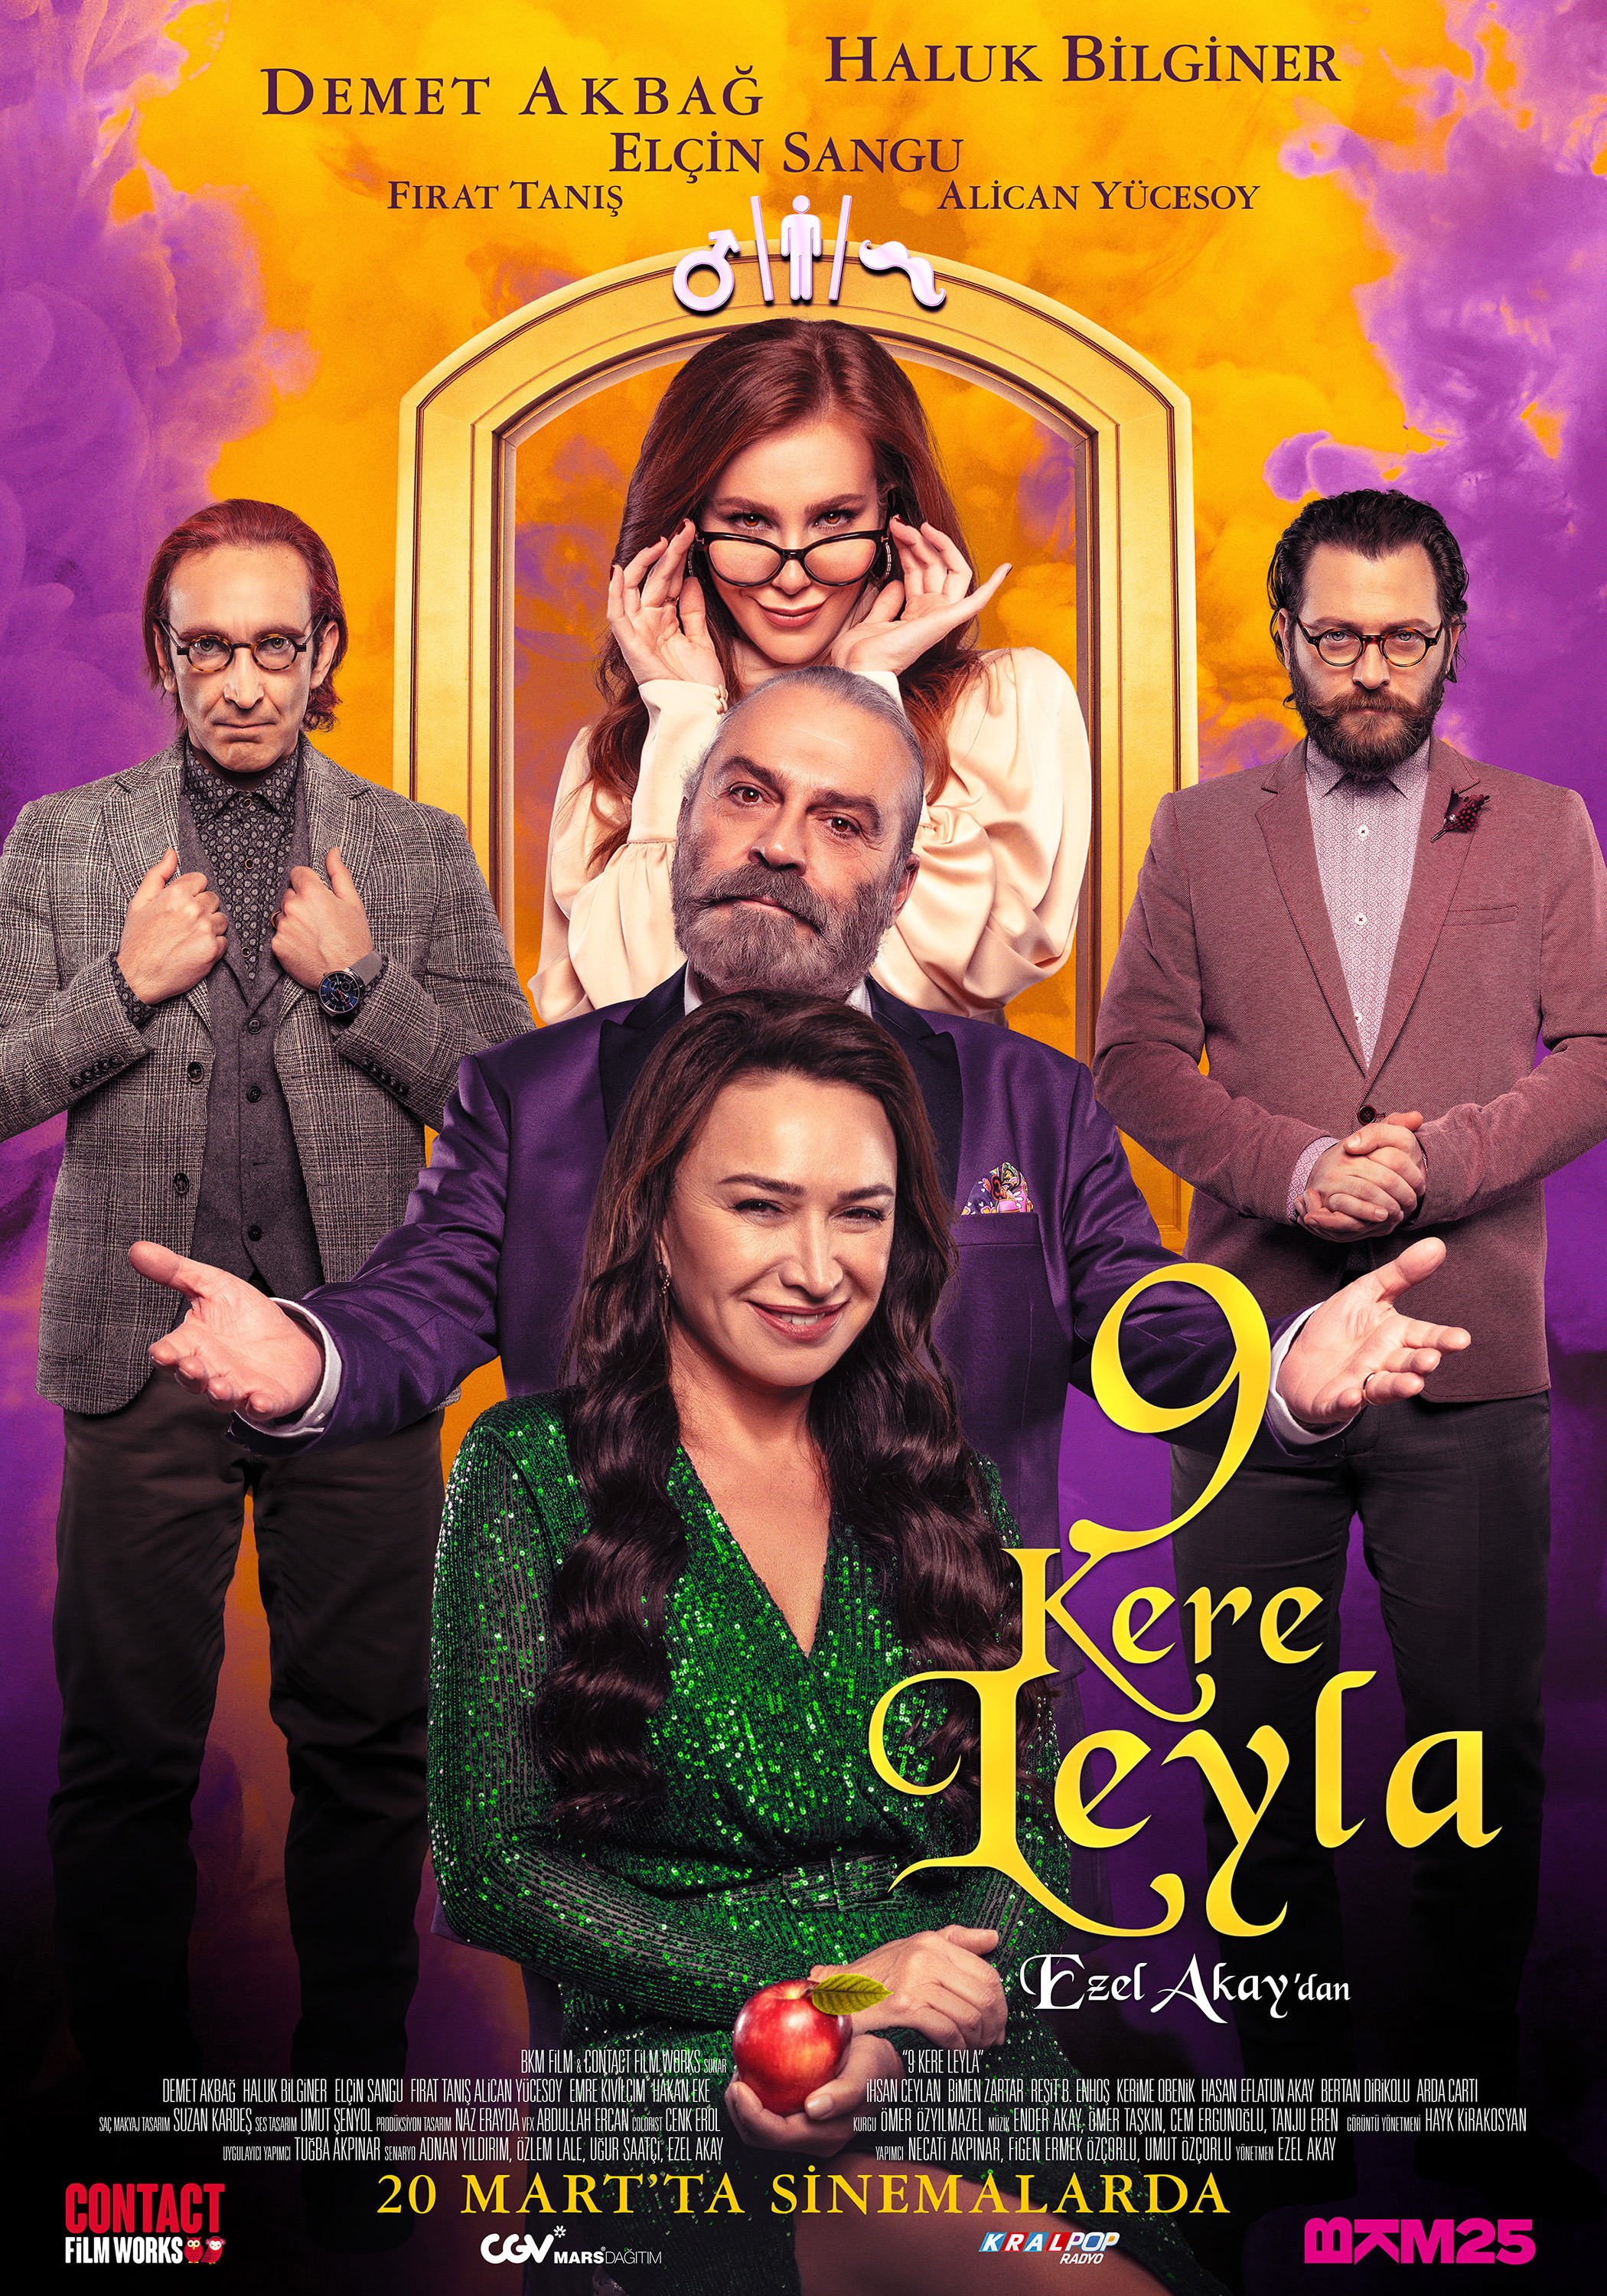 Mega Sized Movie Poster Image for 9 Kere Leyla (#2 of 2)